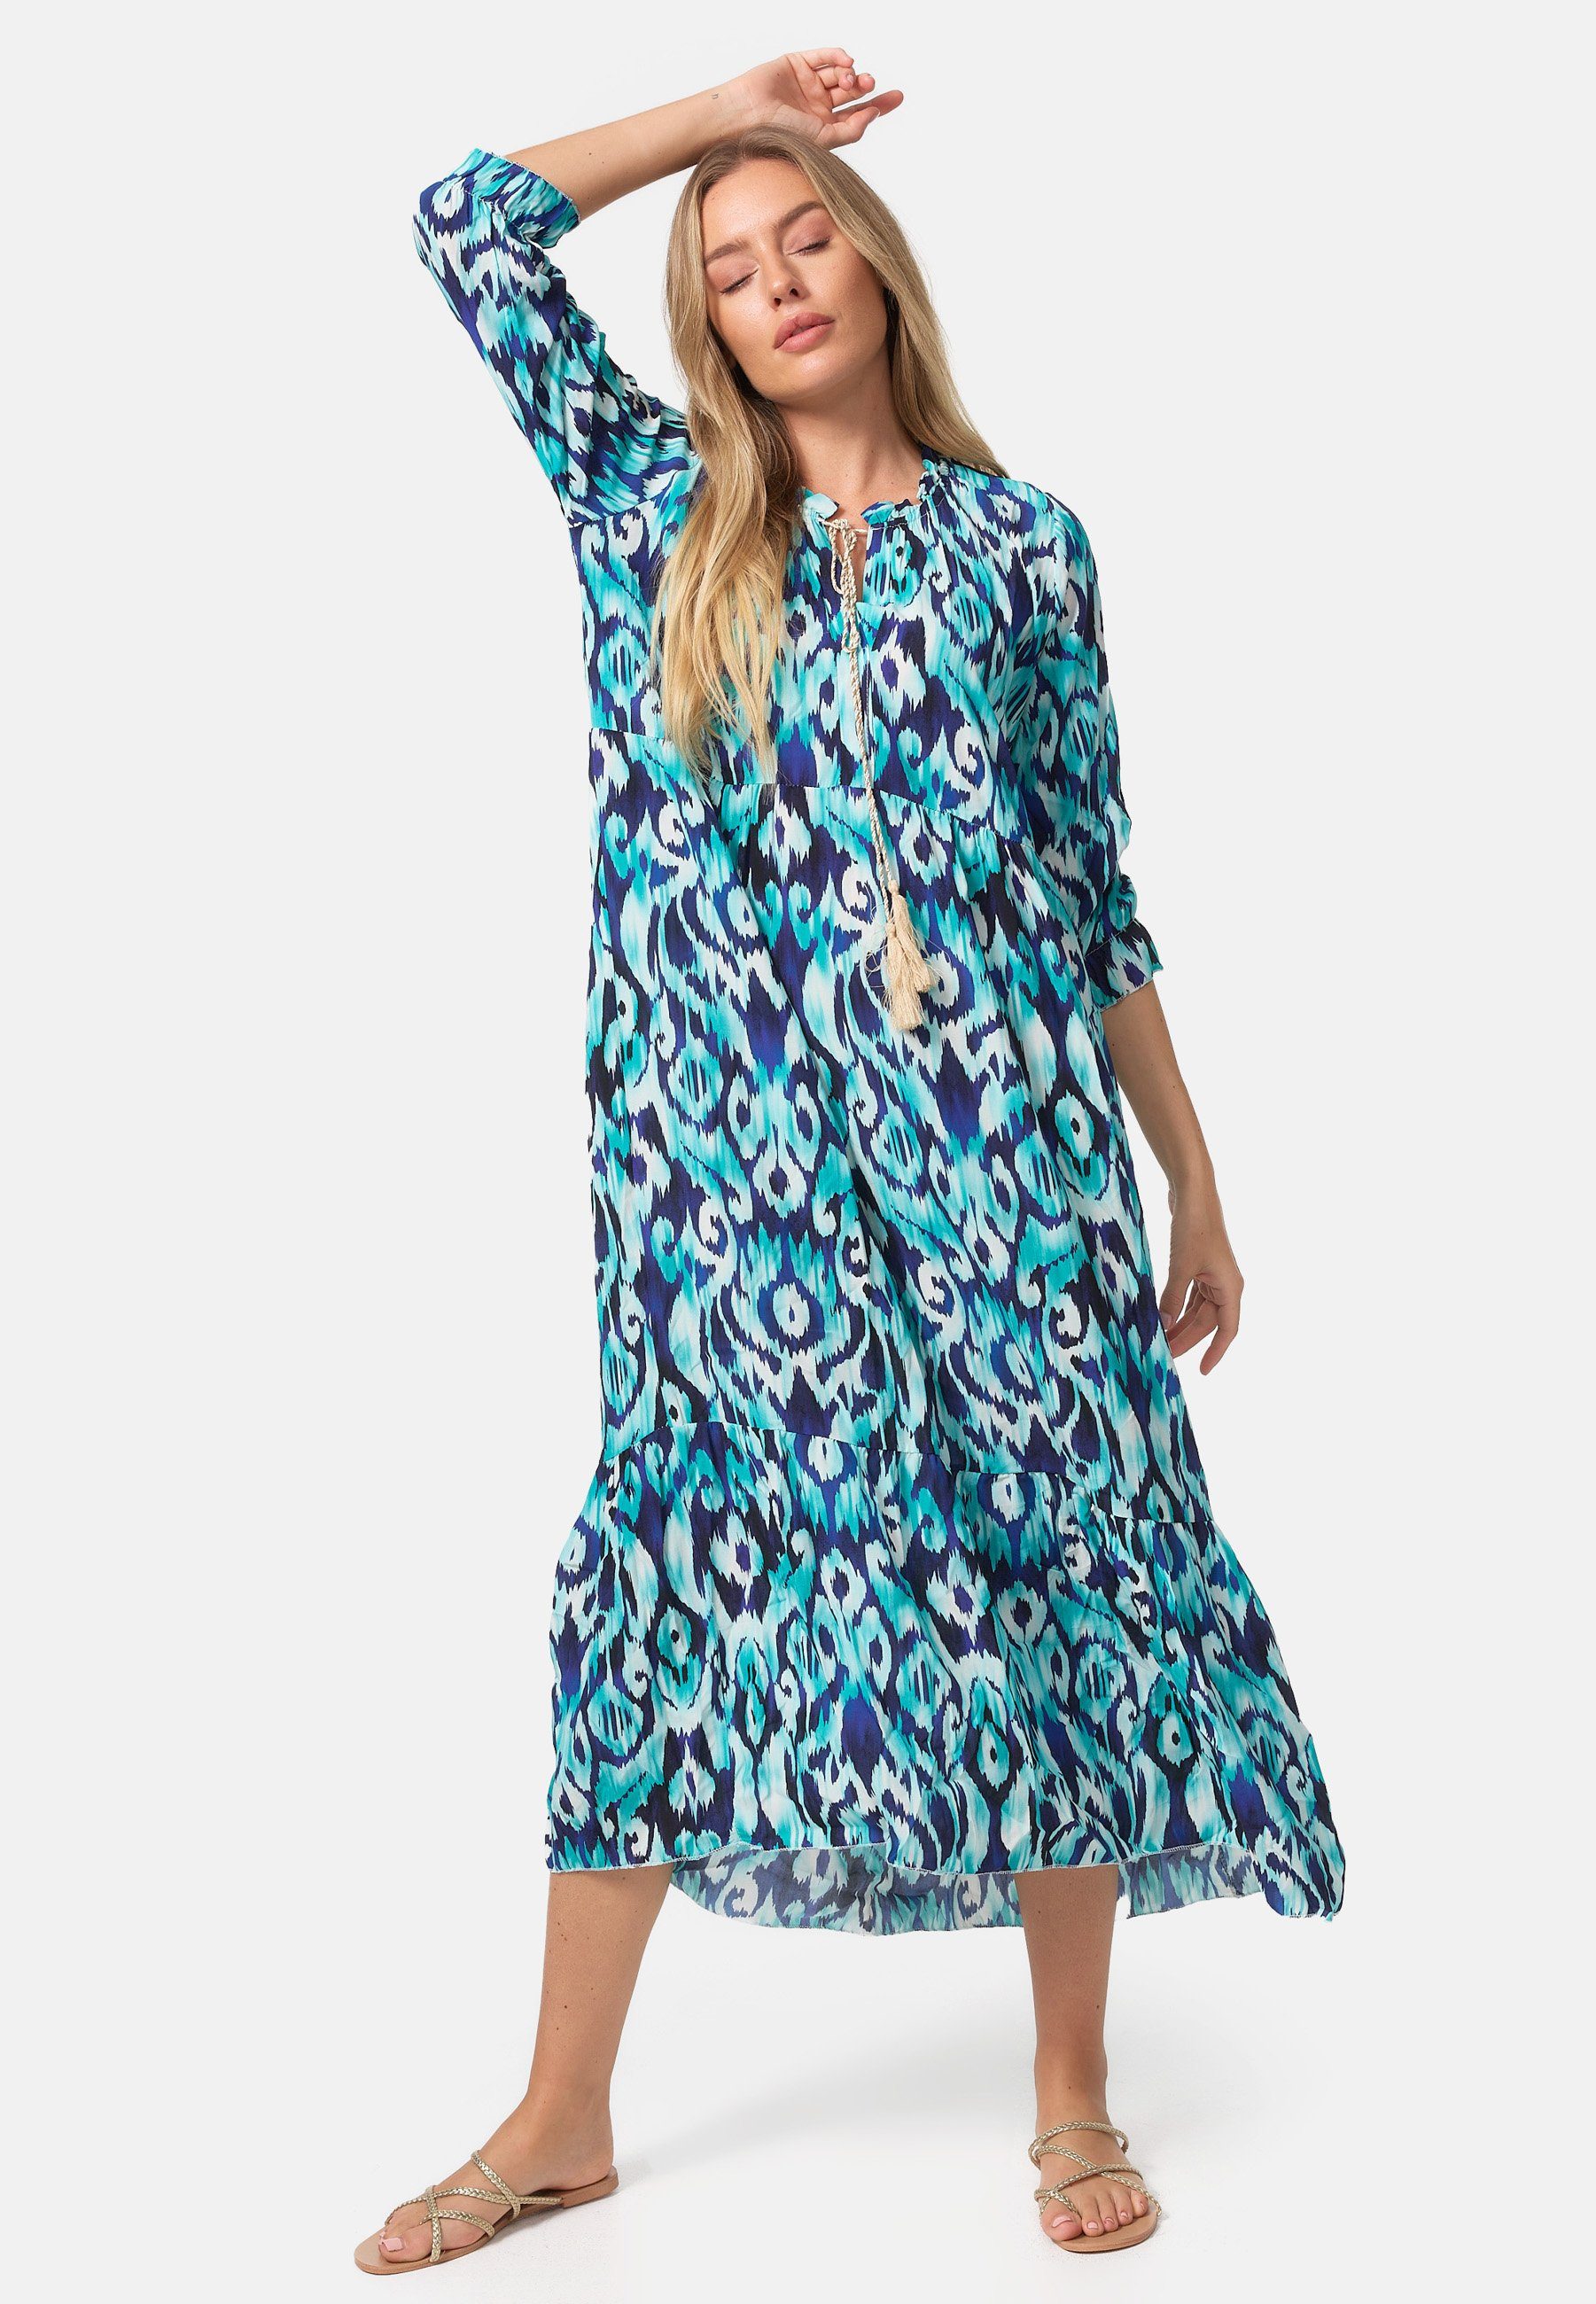 PM SELECTED Sommerkleid PM37 (Sommerliches Maxi Tunika Kleid mit Print in  Einheitsgröße) Gerüschter Kragen, dekorative Kordel, Hohe Taille